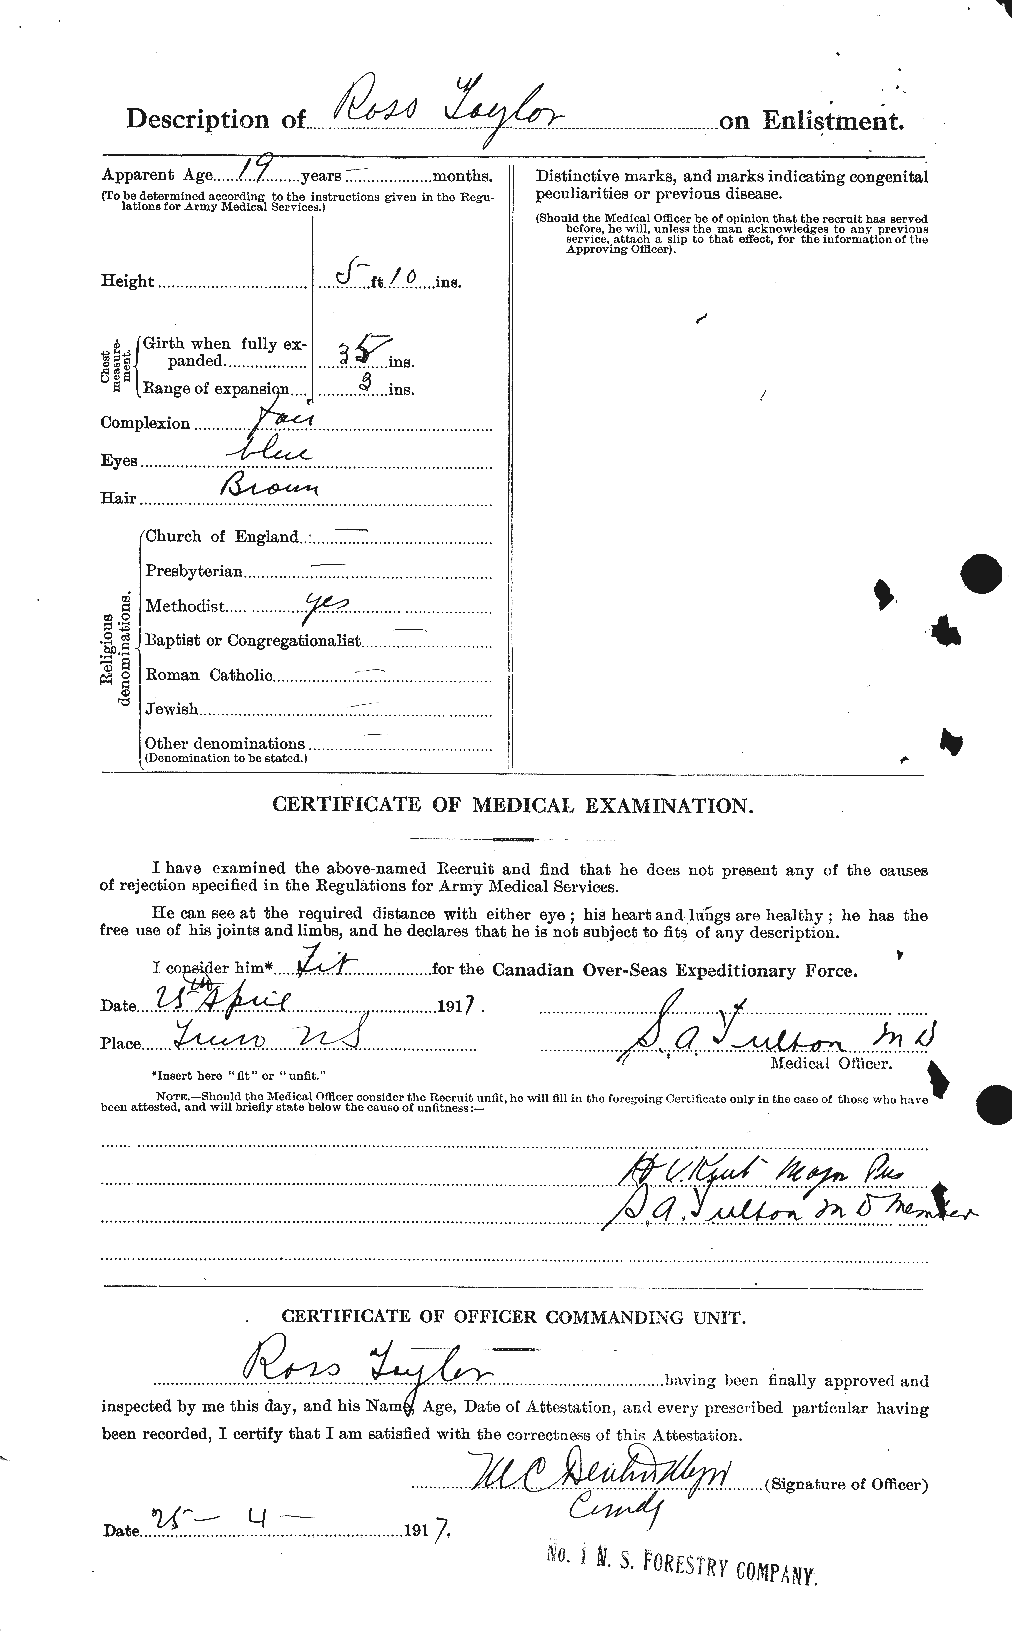 Dossiers du Personnel de la Première Guerre mondiale - CEC 627512b